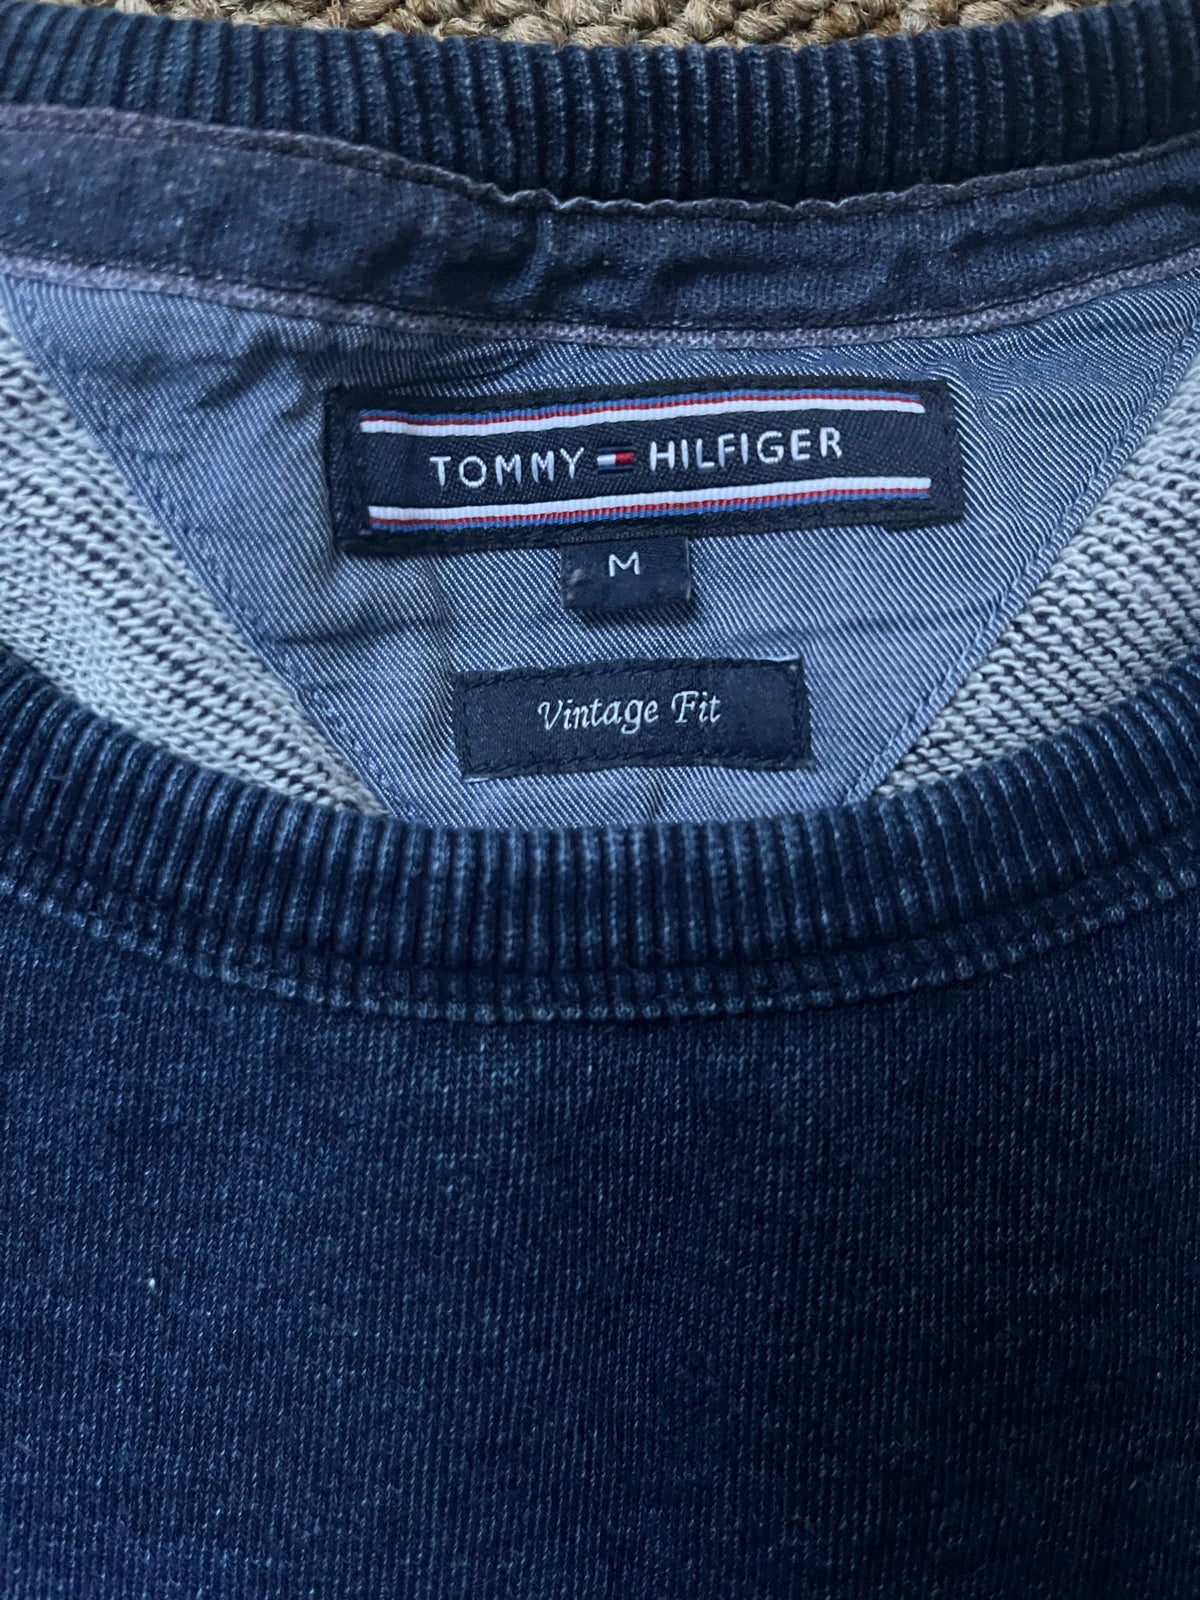 Bluse, Tommy Hilfiger, str. M